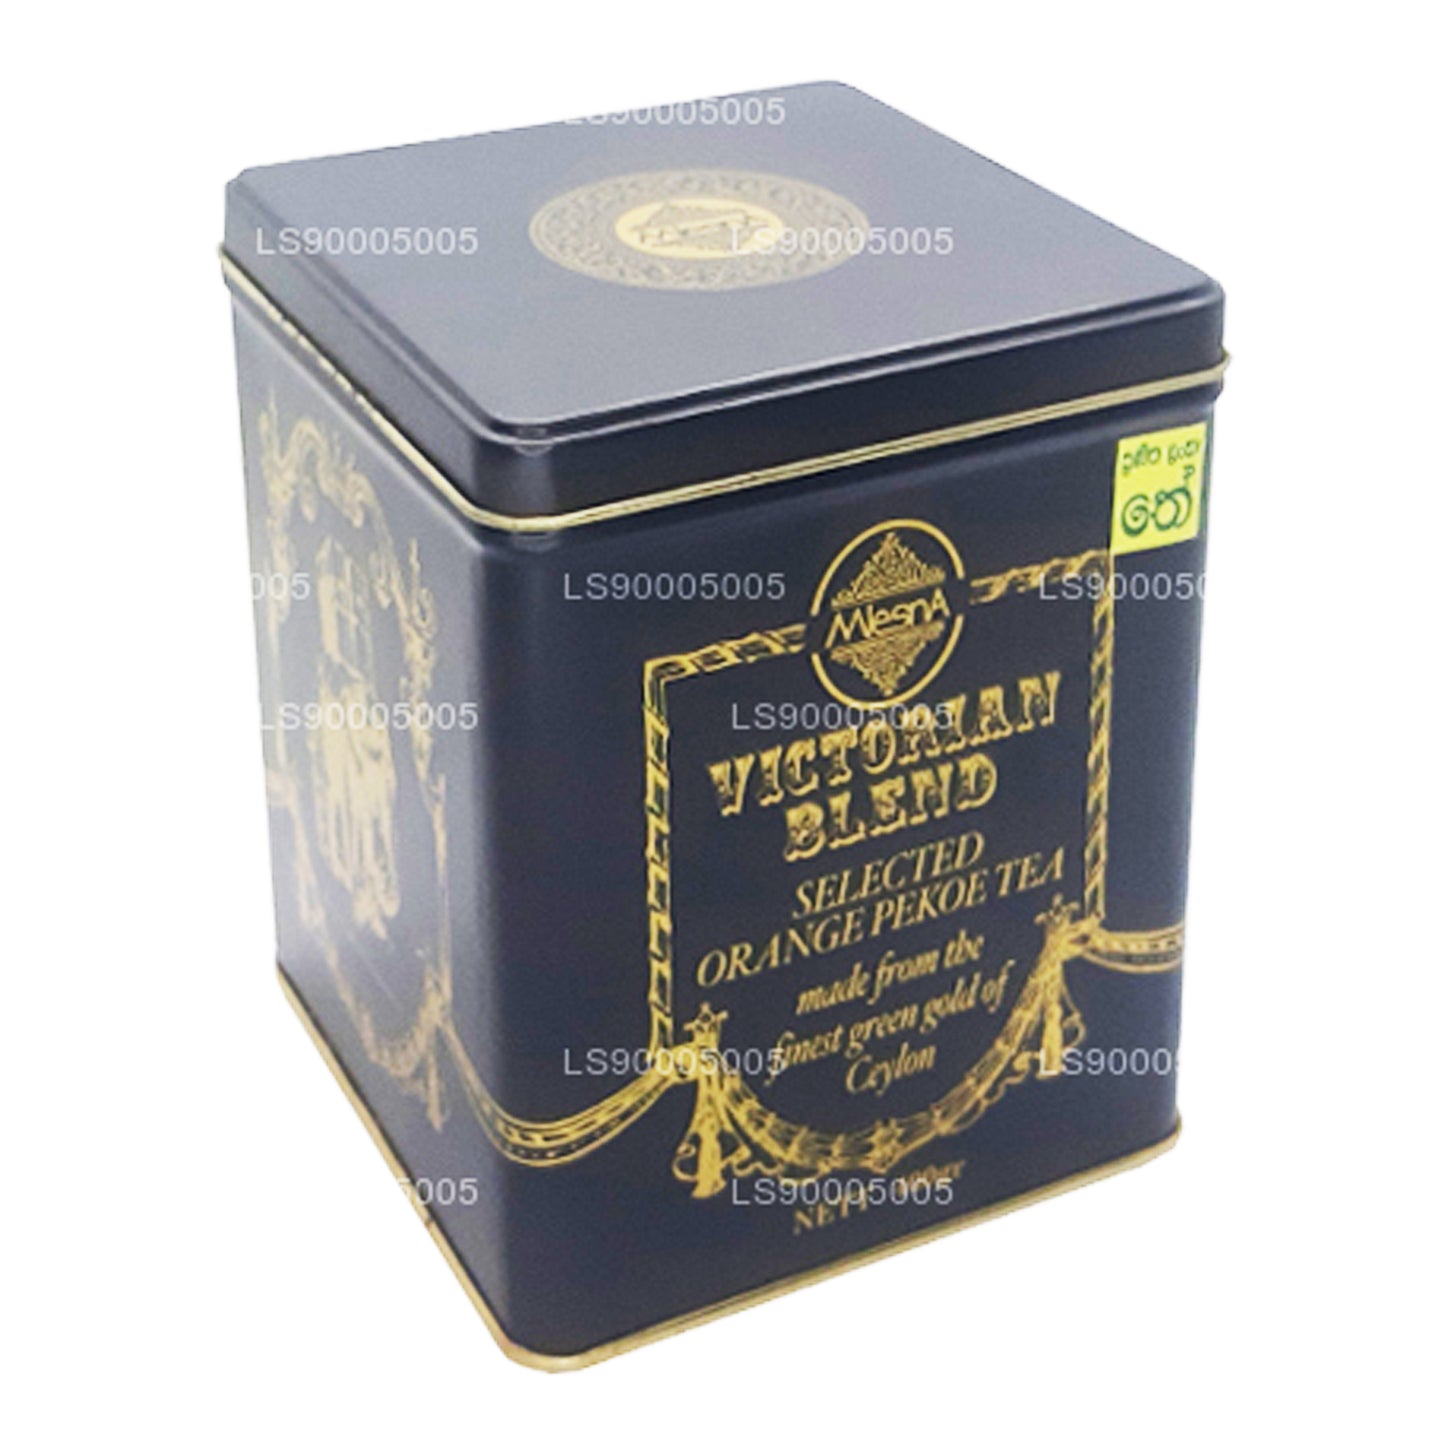 Mlesna Victorian Blend OP Leaf Tea zwarte metalen caddy